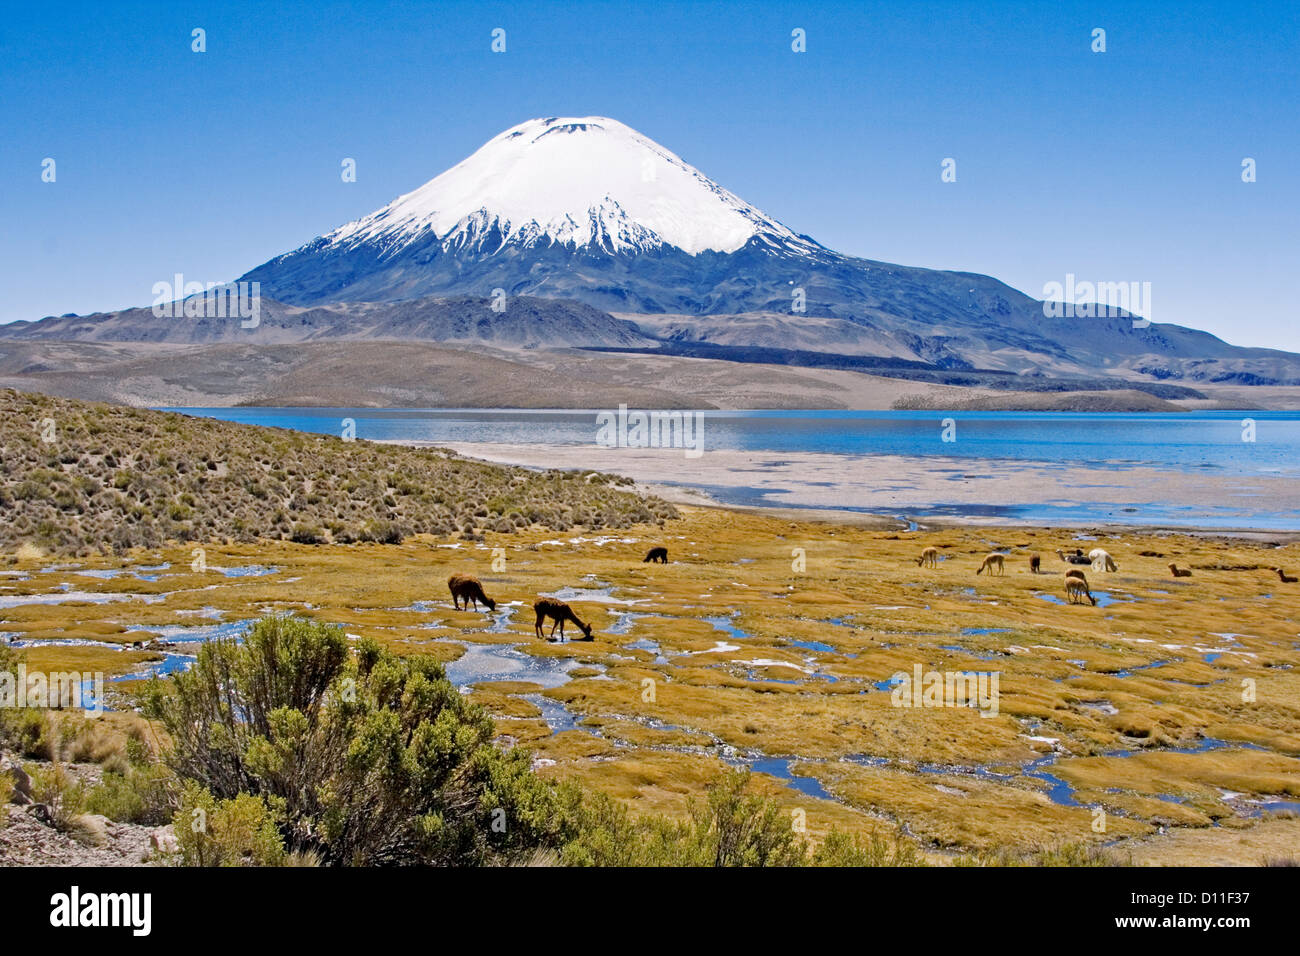 Paesaggio pittoresco con alpaca pascolano accanto acque blu del lago Chungara a piedi di snow-capped volcano Parinacota, Cile Foto Stock